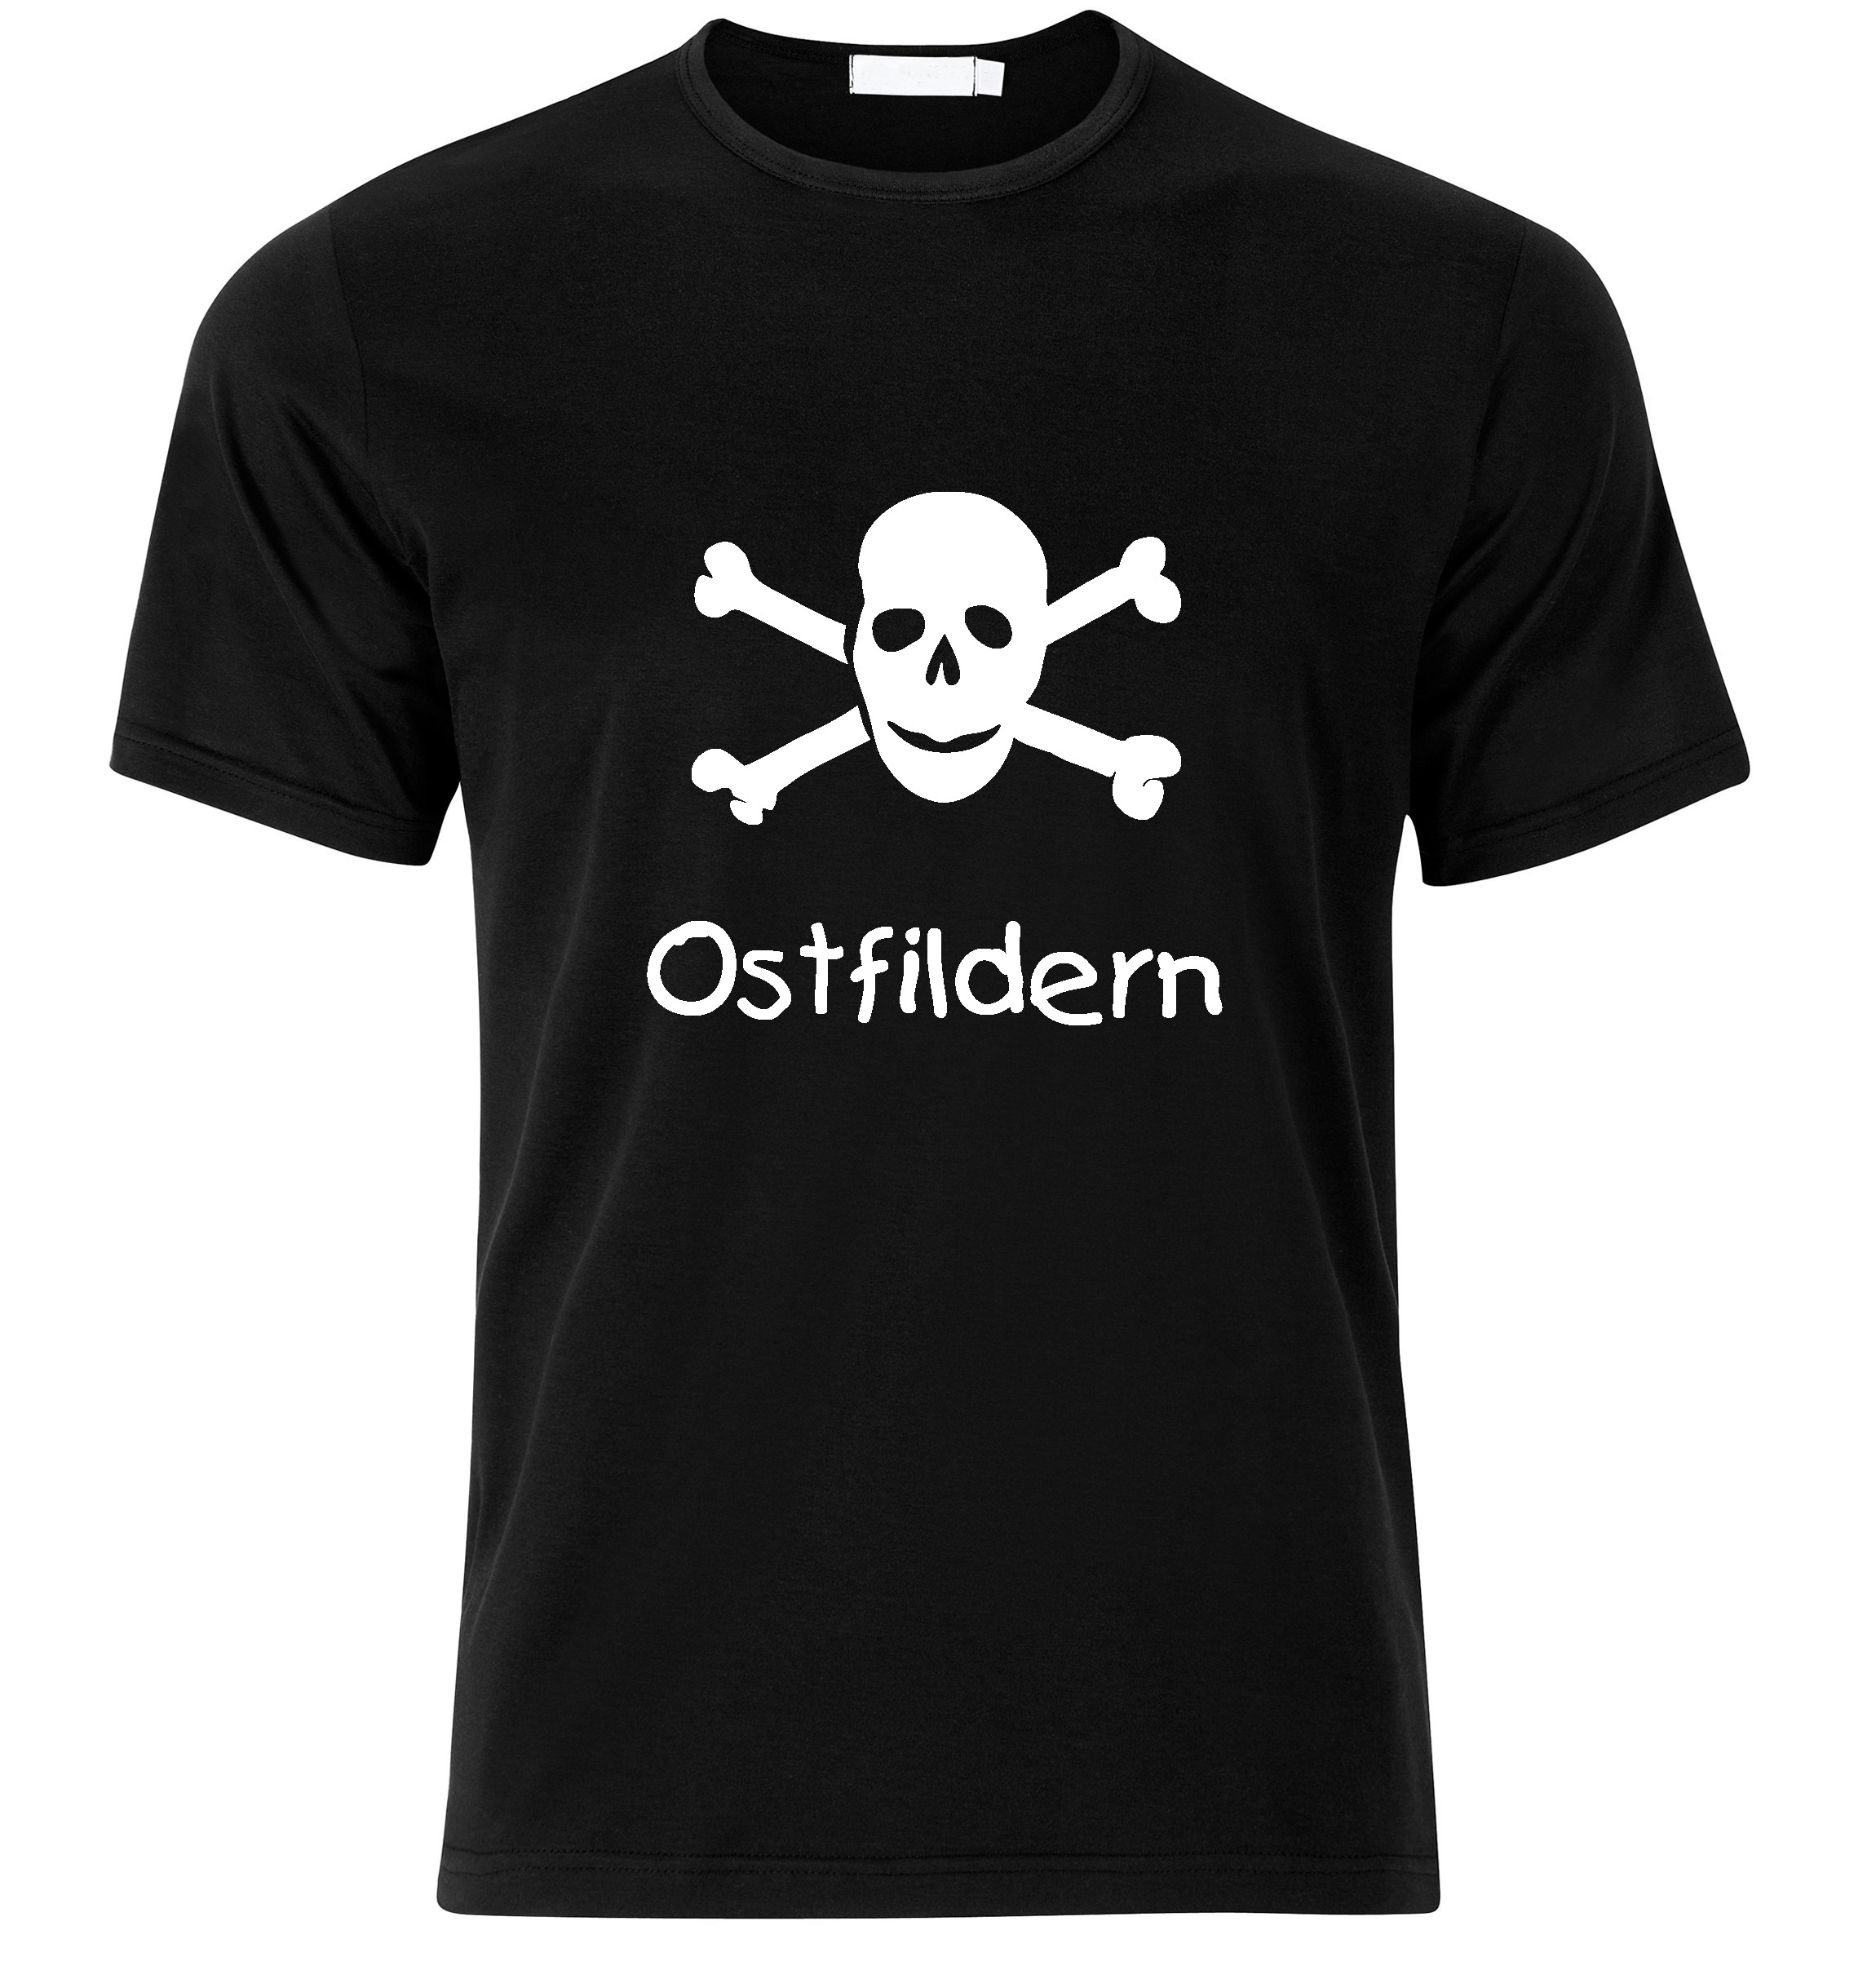 T-Shirt Ostfildern Jolly Roger, Totenkopf